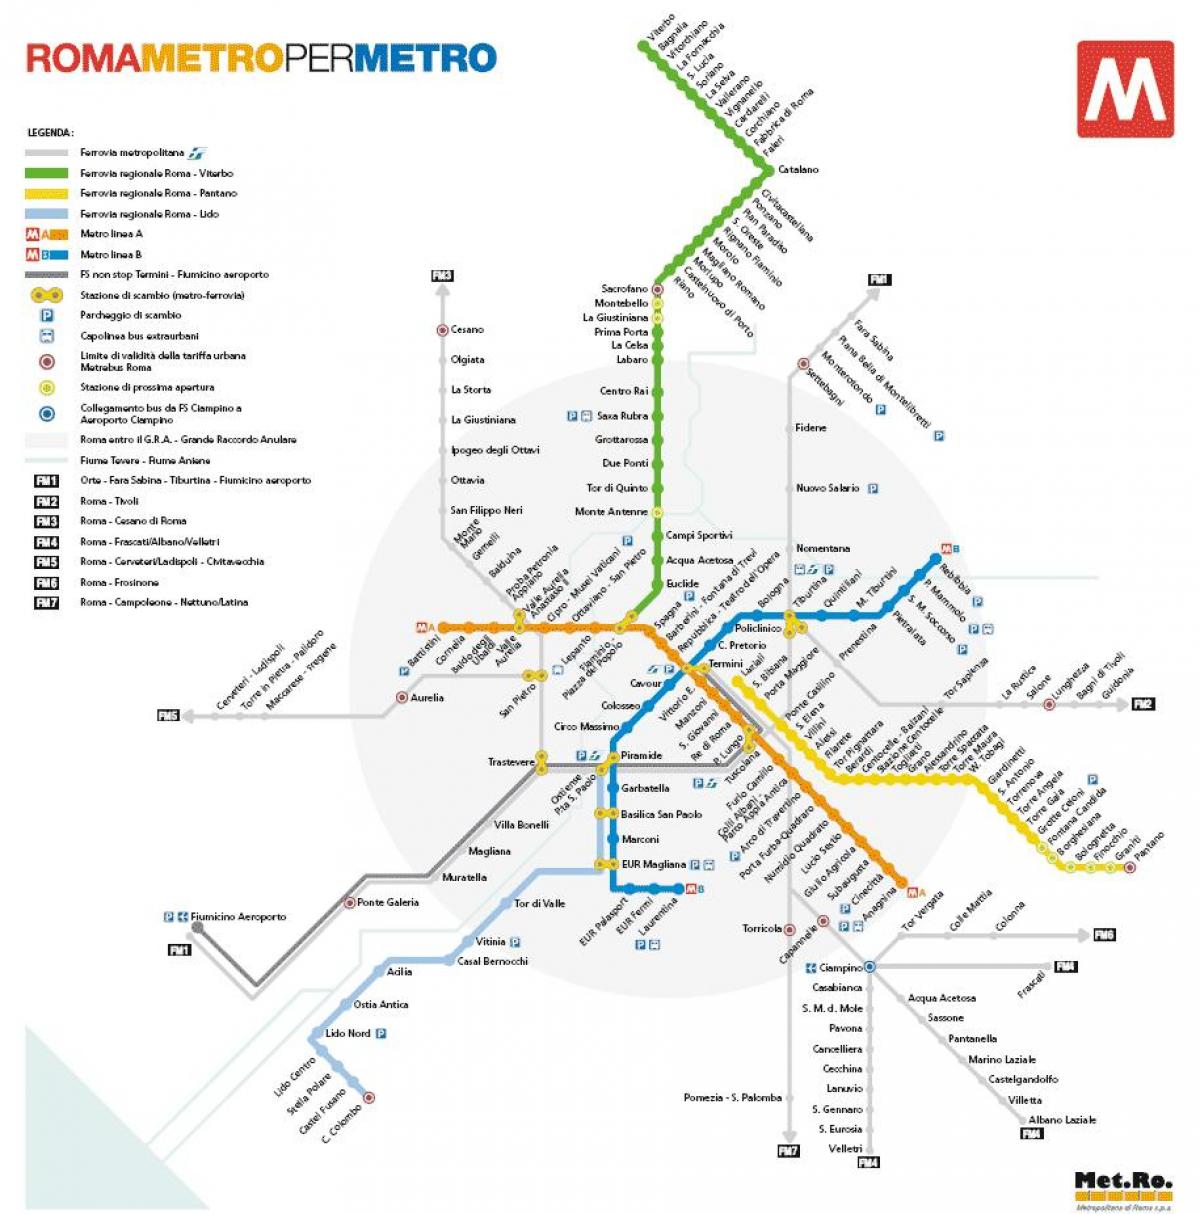 Řím mapa metro 2016